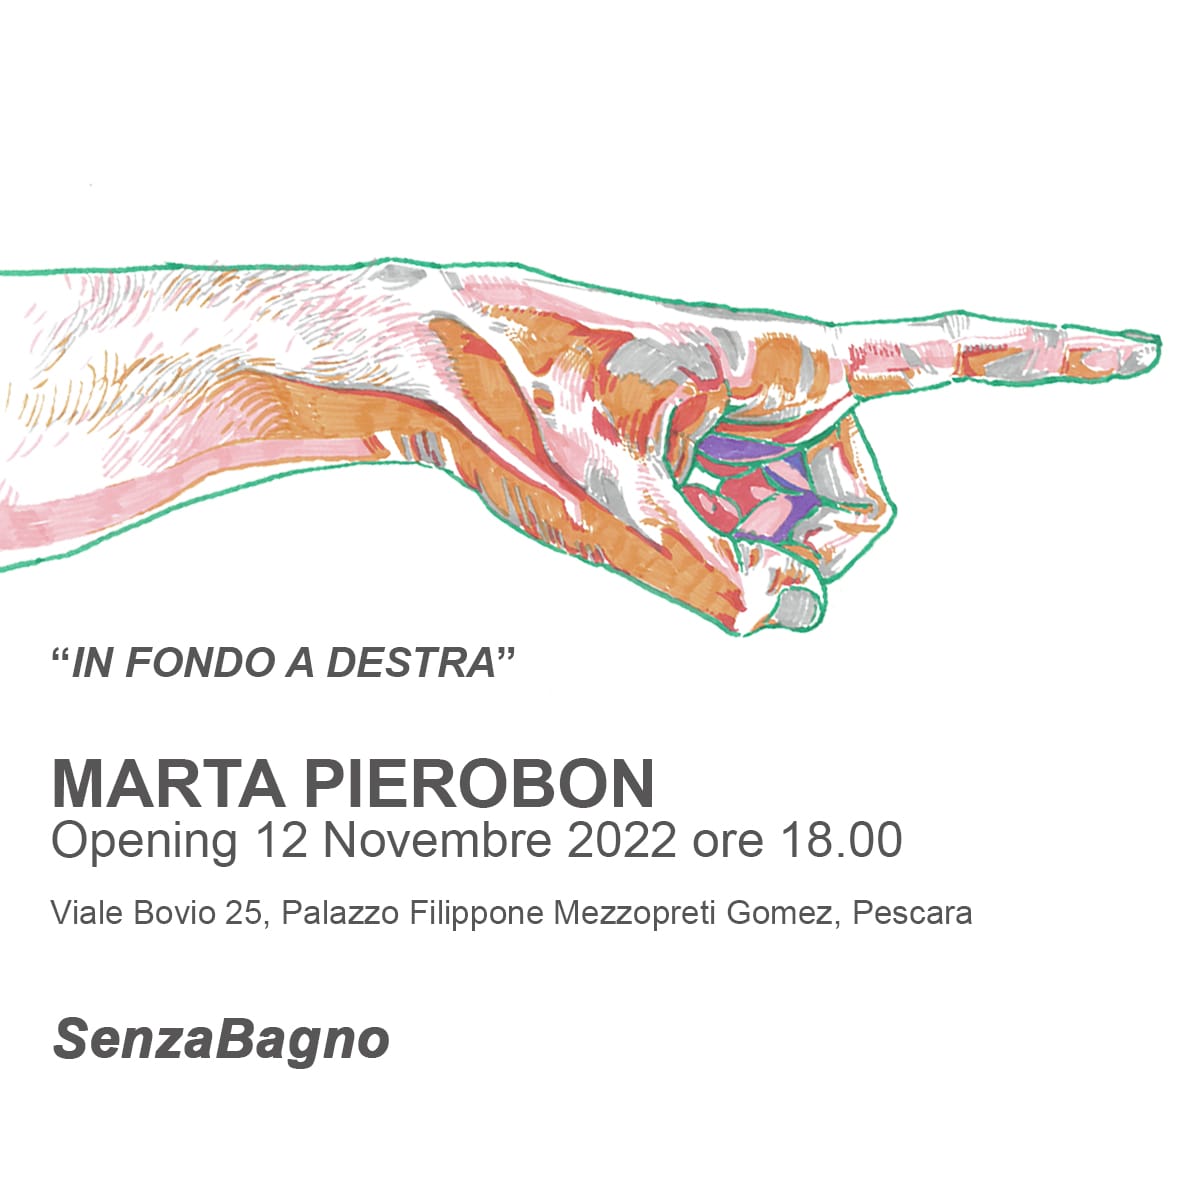 SenzaBagno – Marta Pierobon